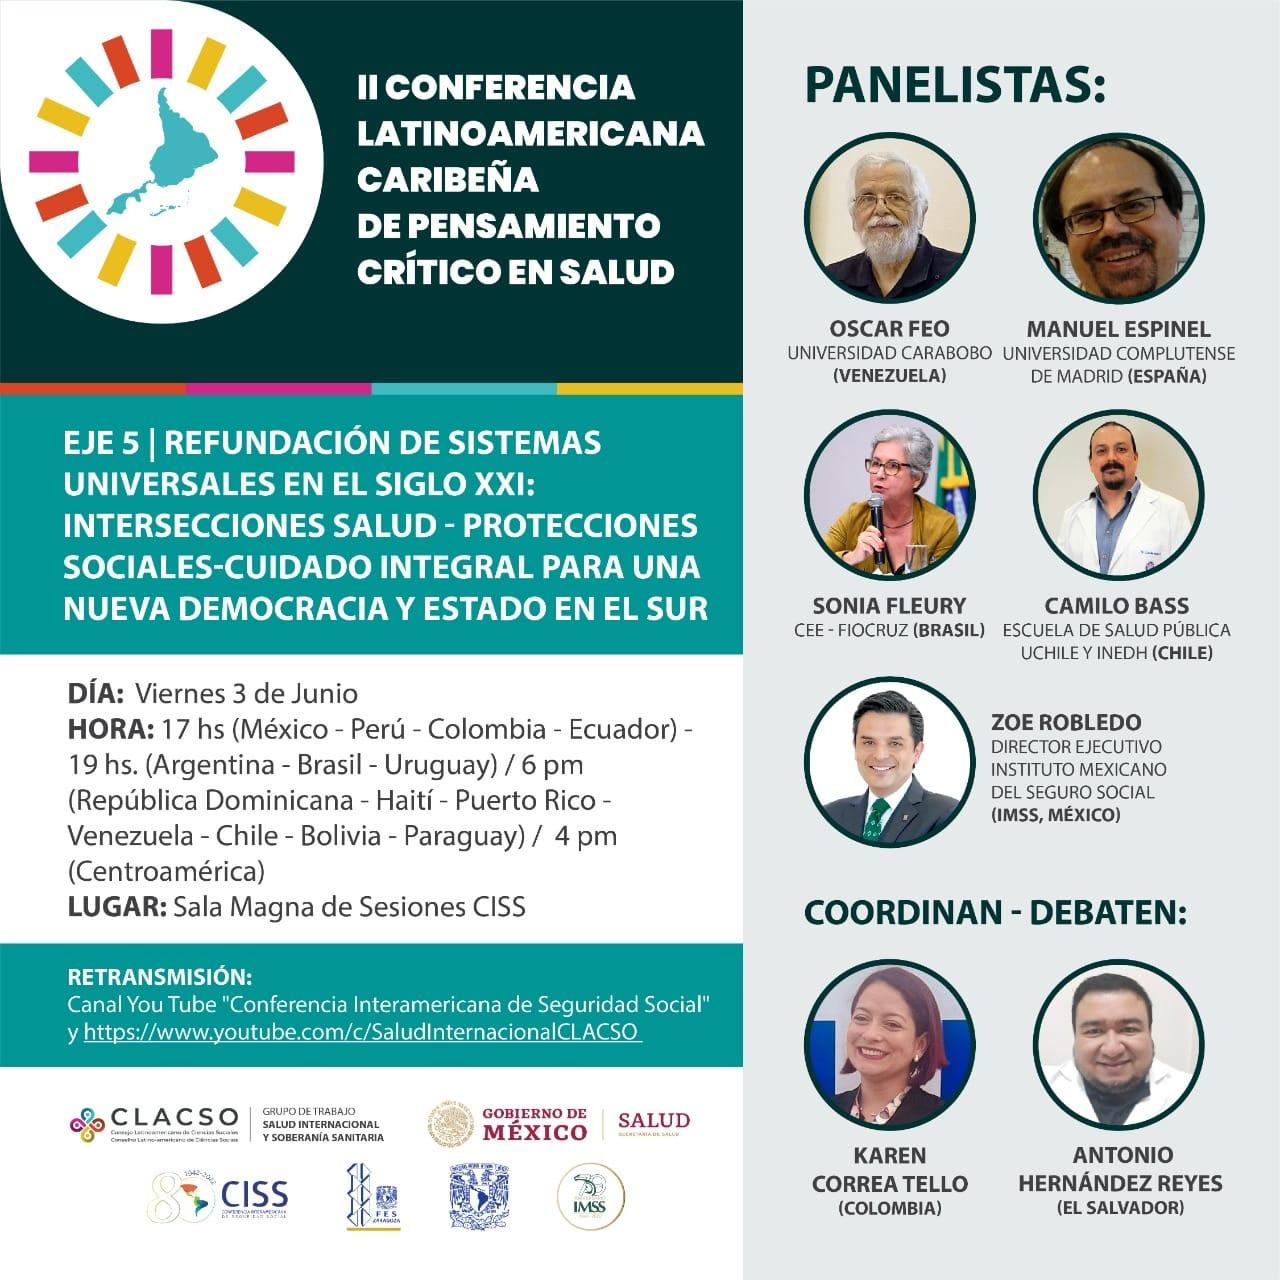 II Conferencia Latinoamericana y Caribeña del Pensamiento crítico en salud